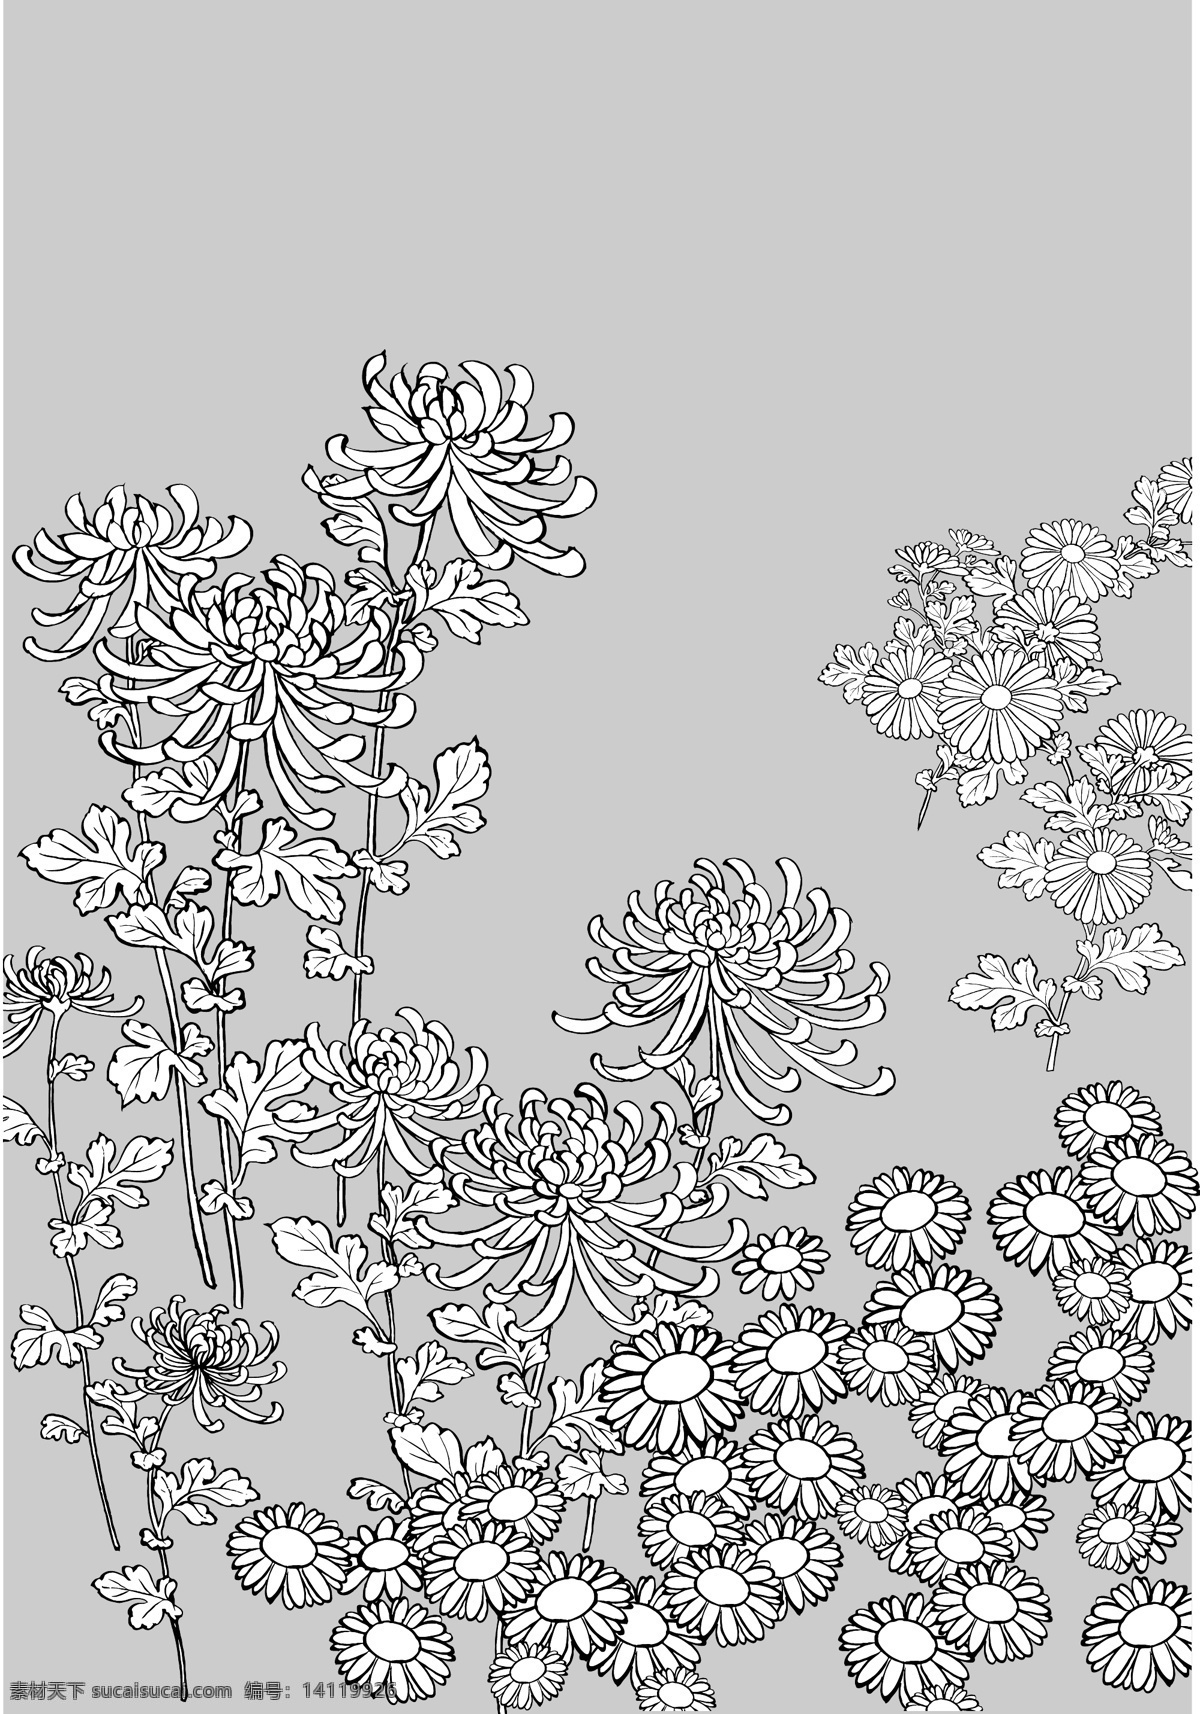 日本 线描 植物 花卉 矢量 雏菊 野菊花 黛西 画线 矢量图 其他矢量图